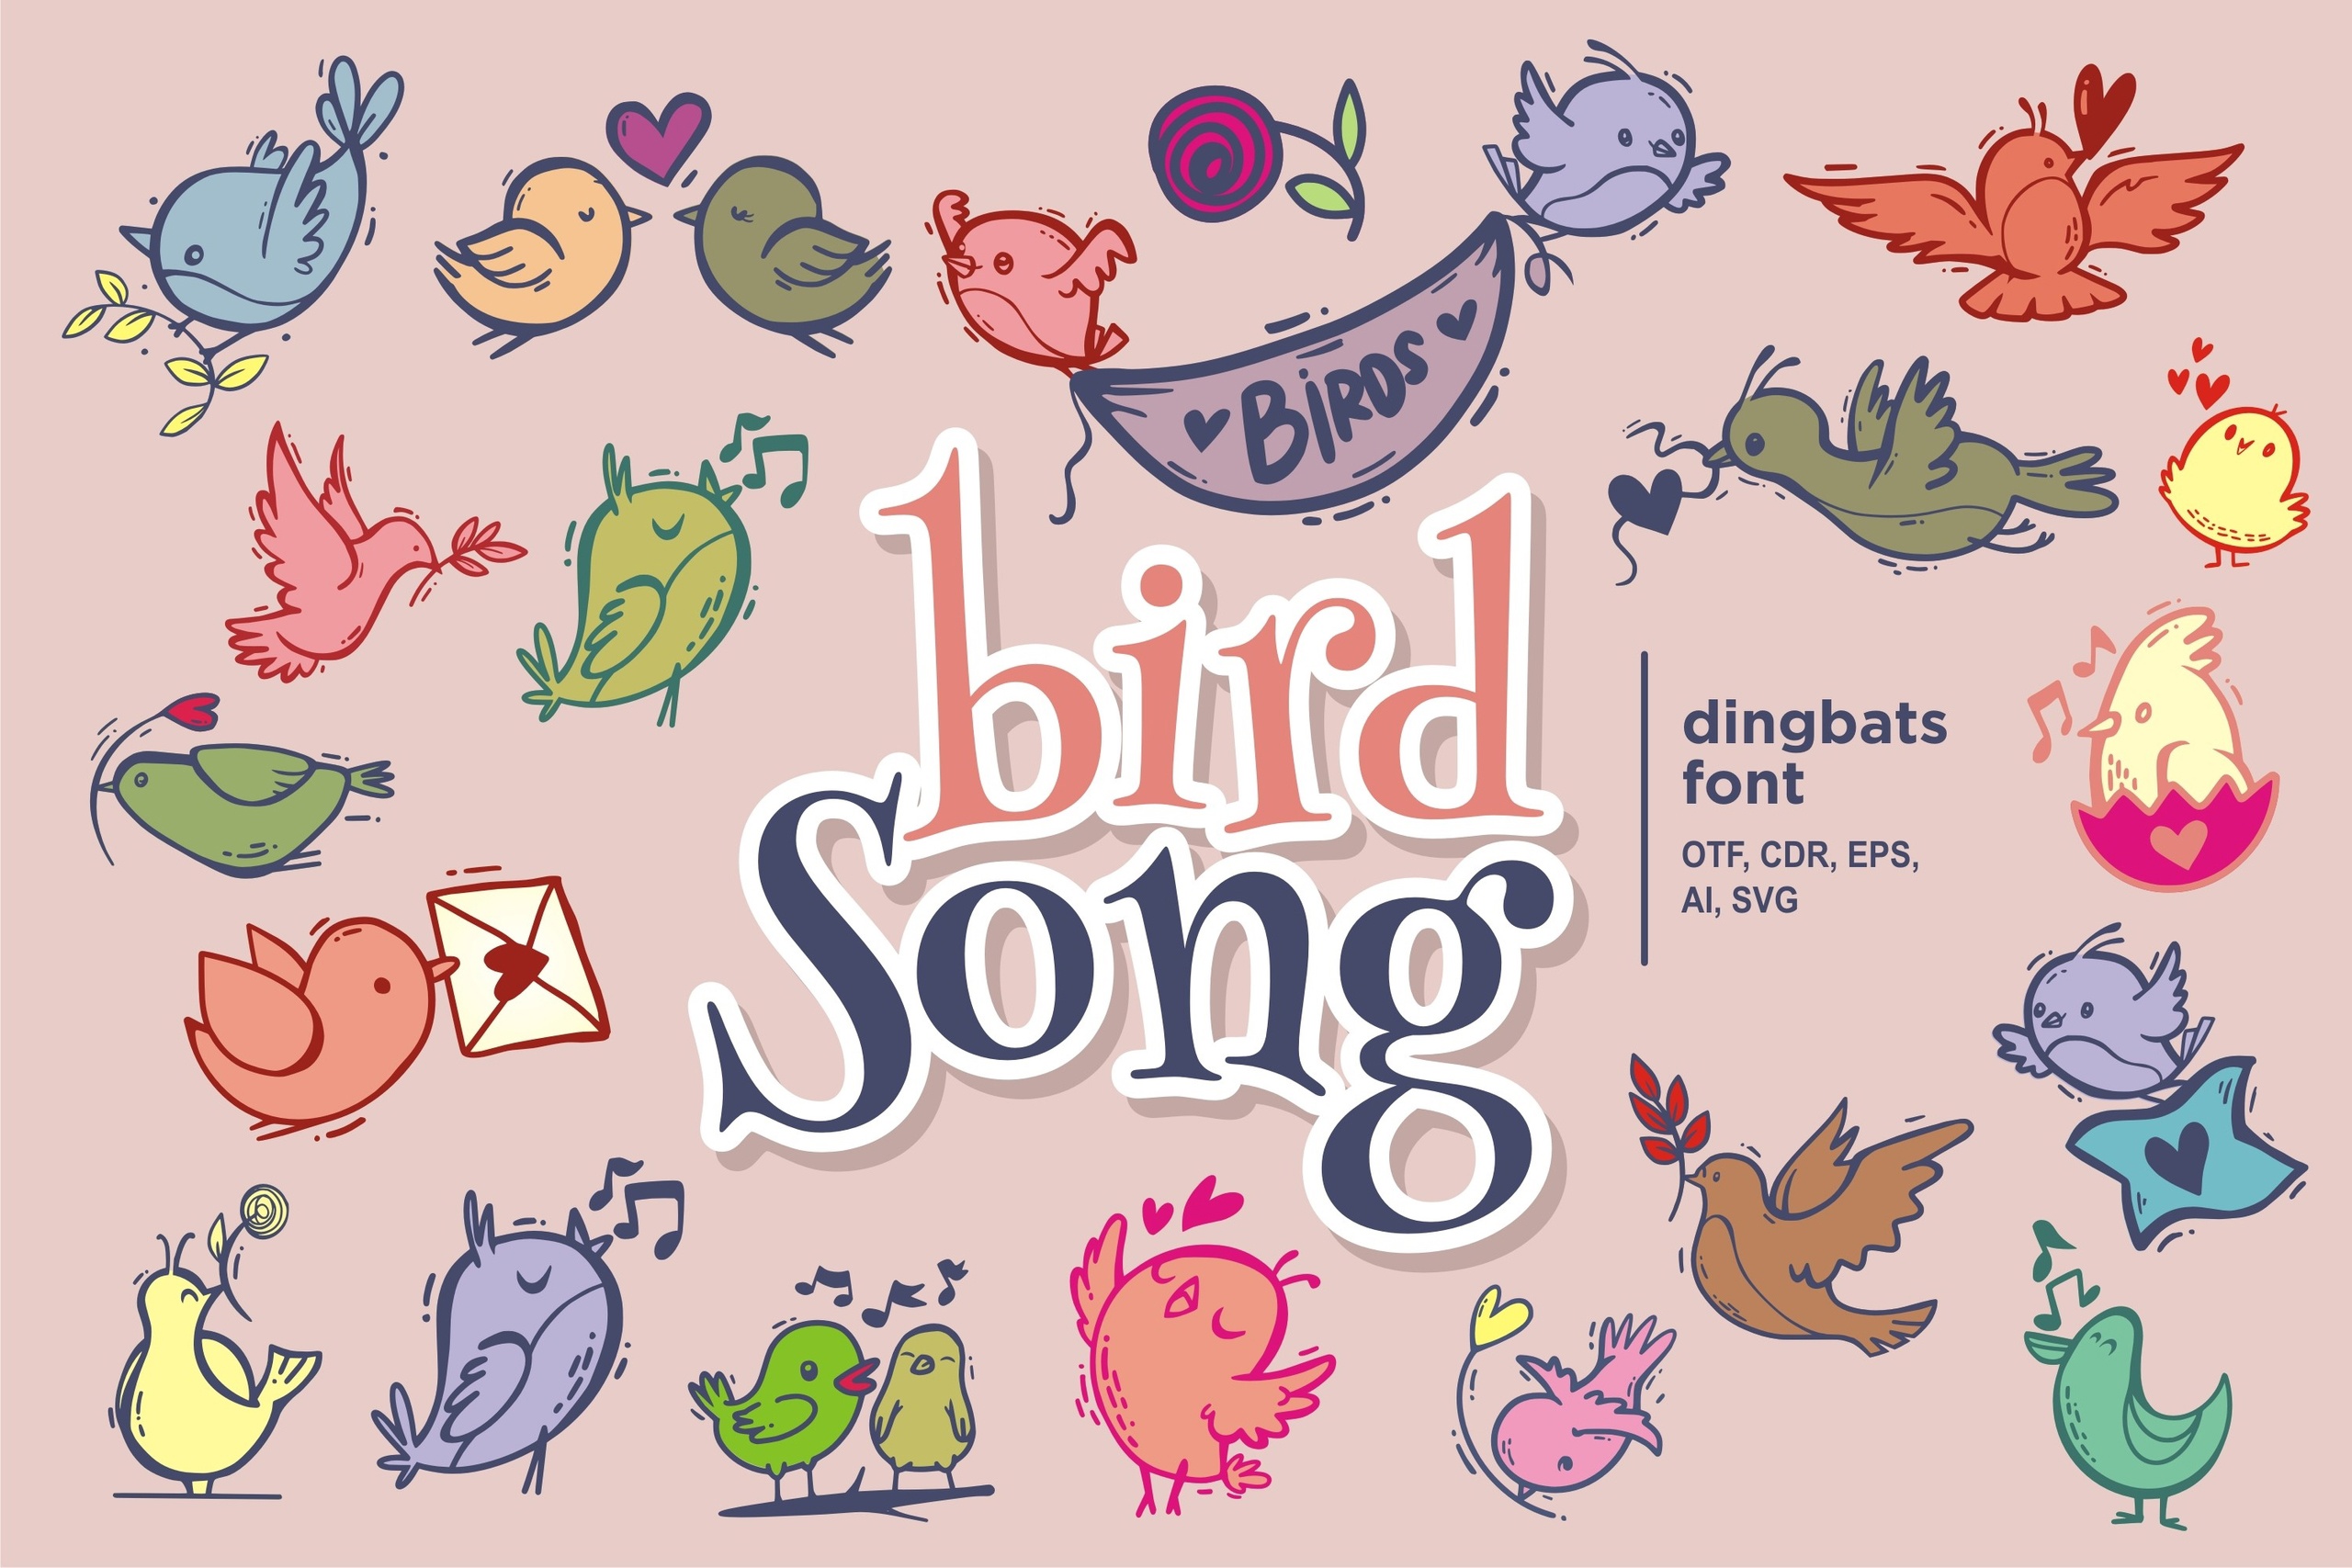 Police Bird Song